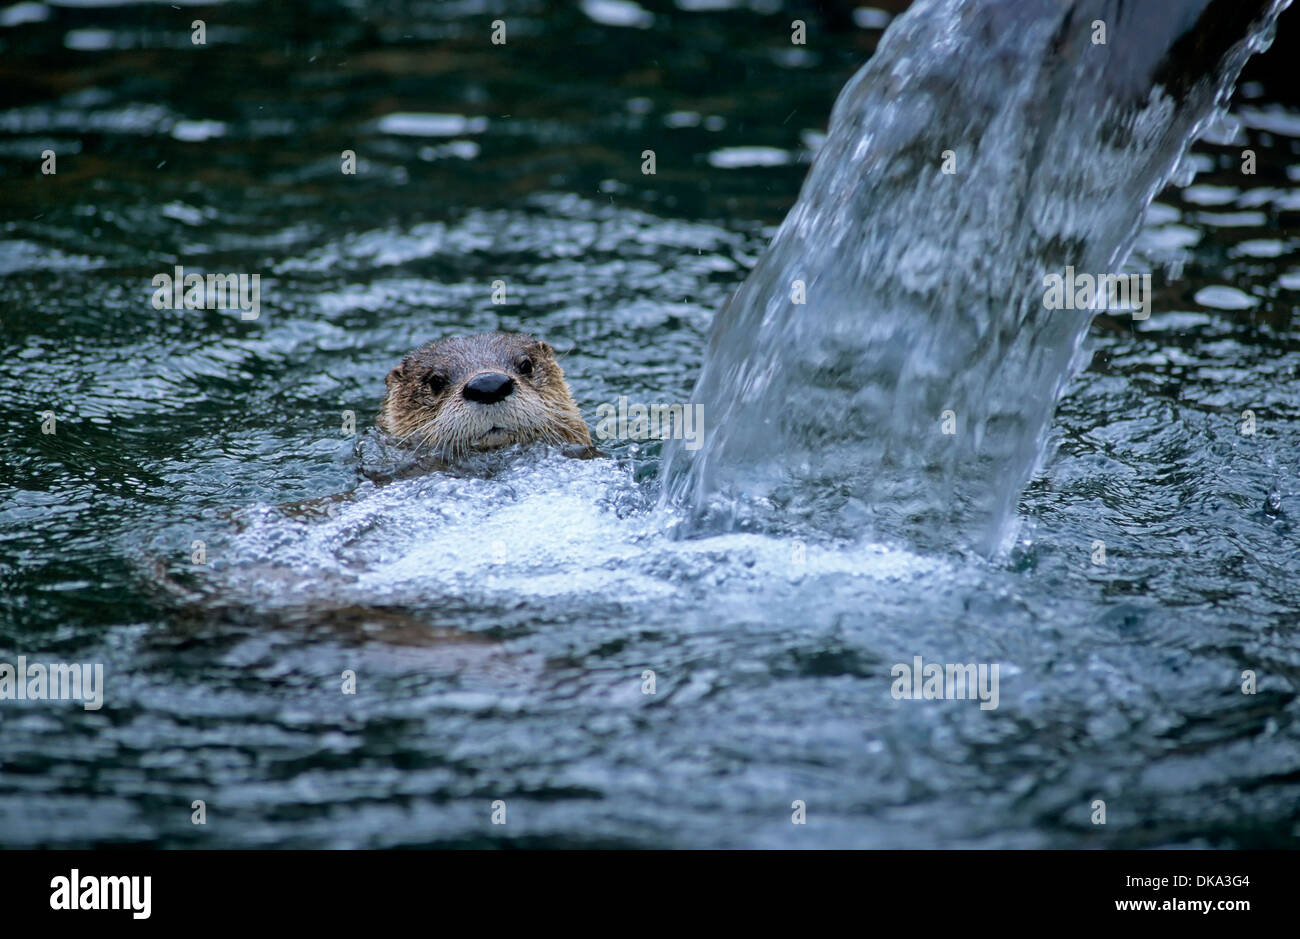 Kanadischer Fischotter im Wasser, Nordamerikanischer Fischotter (Lontra canadensis), northern river otter, common otter, Stock Photo